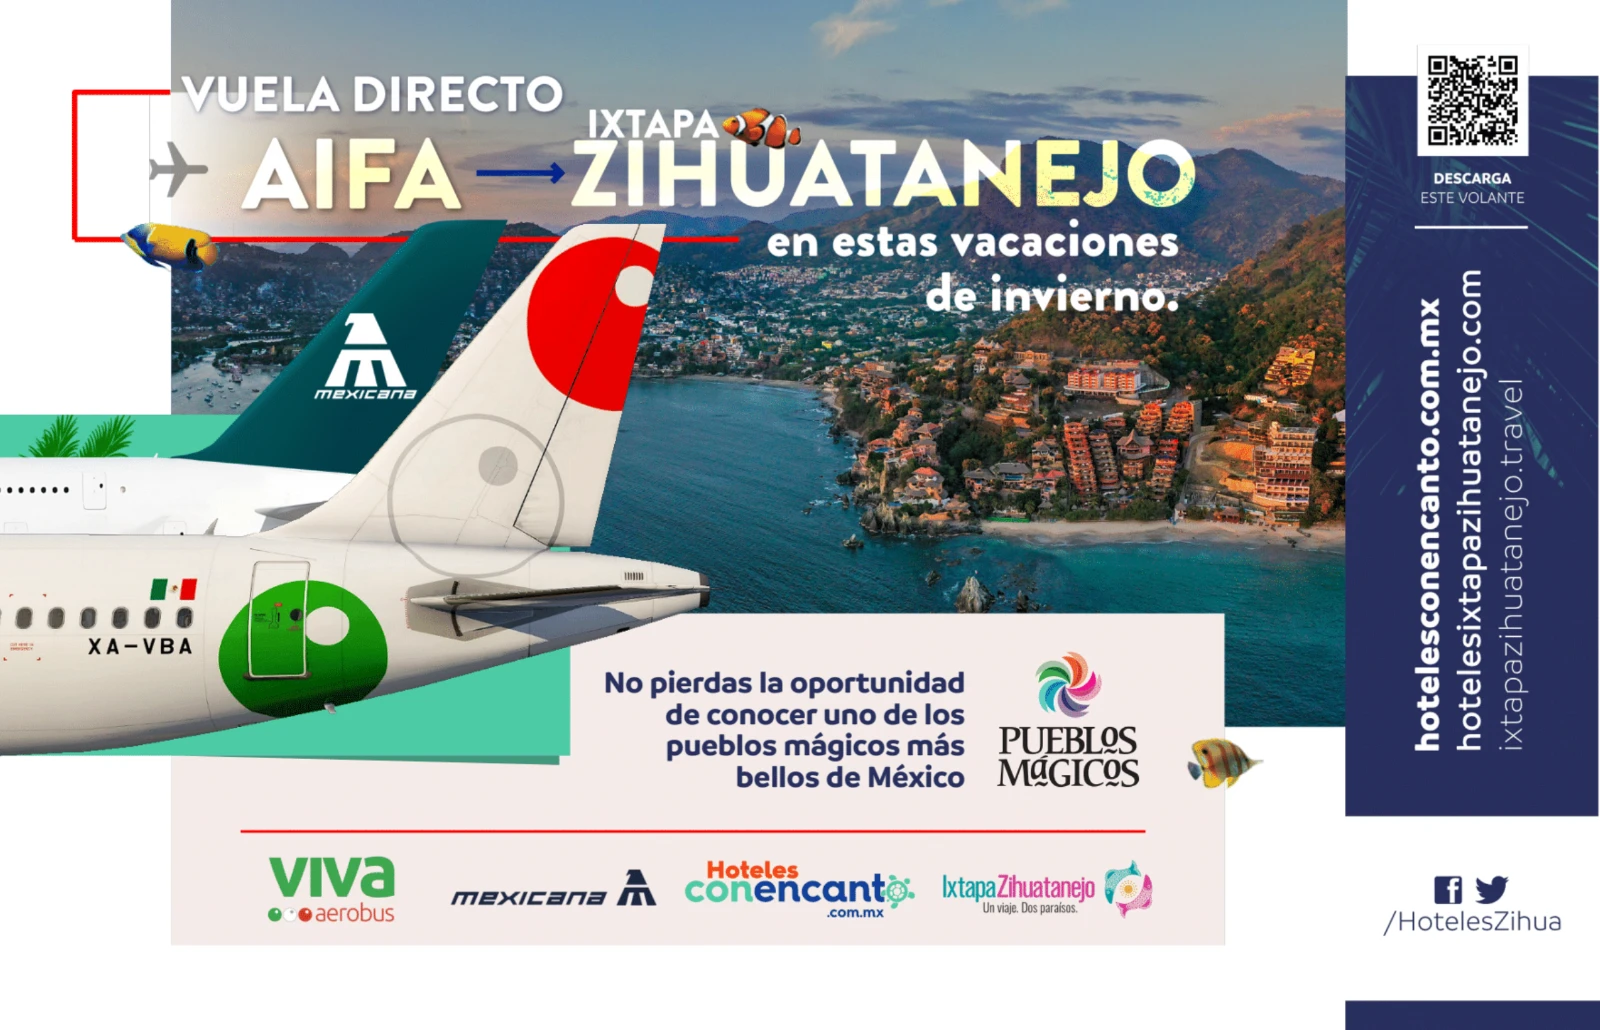 Envolez-vous vers Ixtapa Zihuatanejo depuis l’aéroport AIFA.